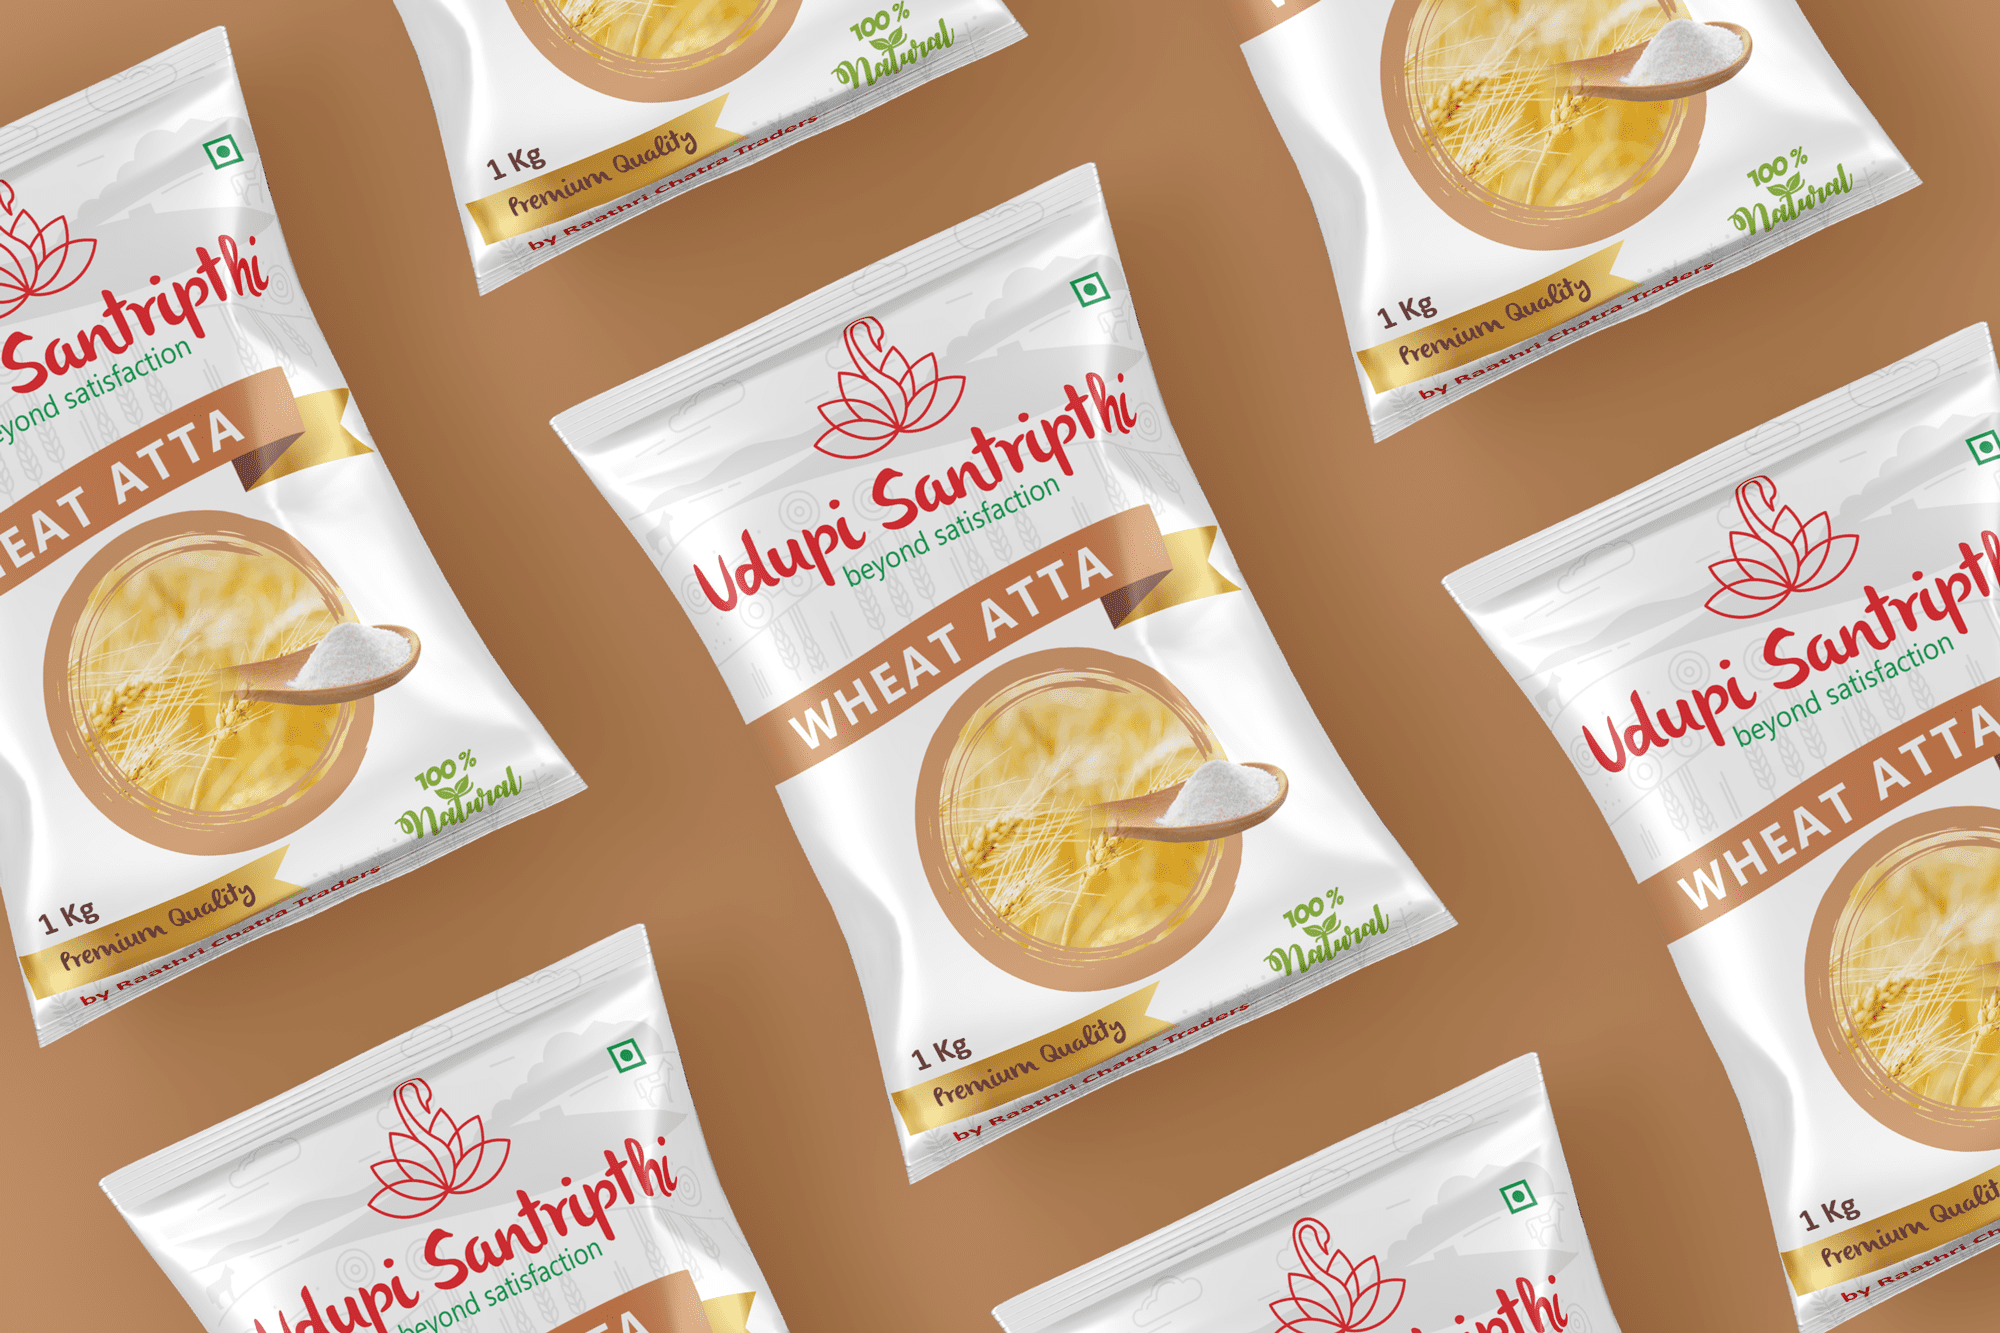 Udupi Santripthi Brand Wheat Flour Branding Packaging Design Digital Marketing in Erode by Violet Spark